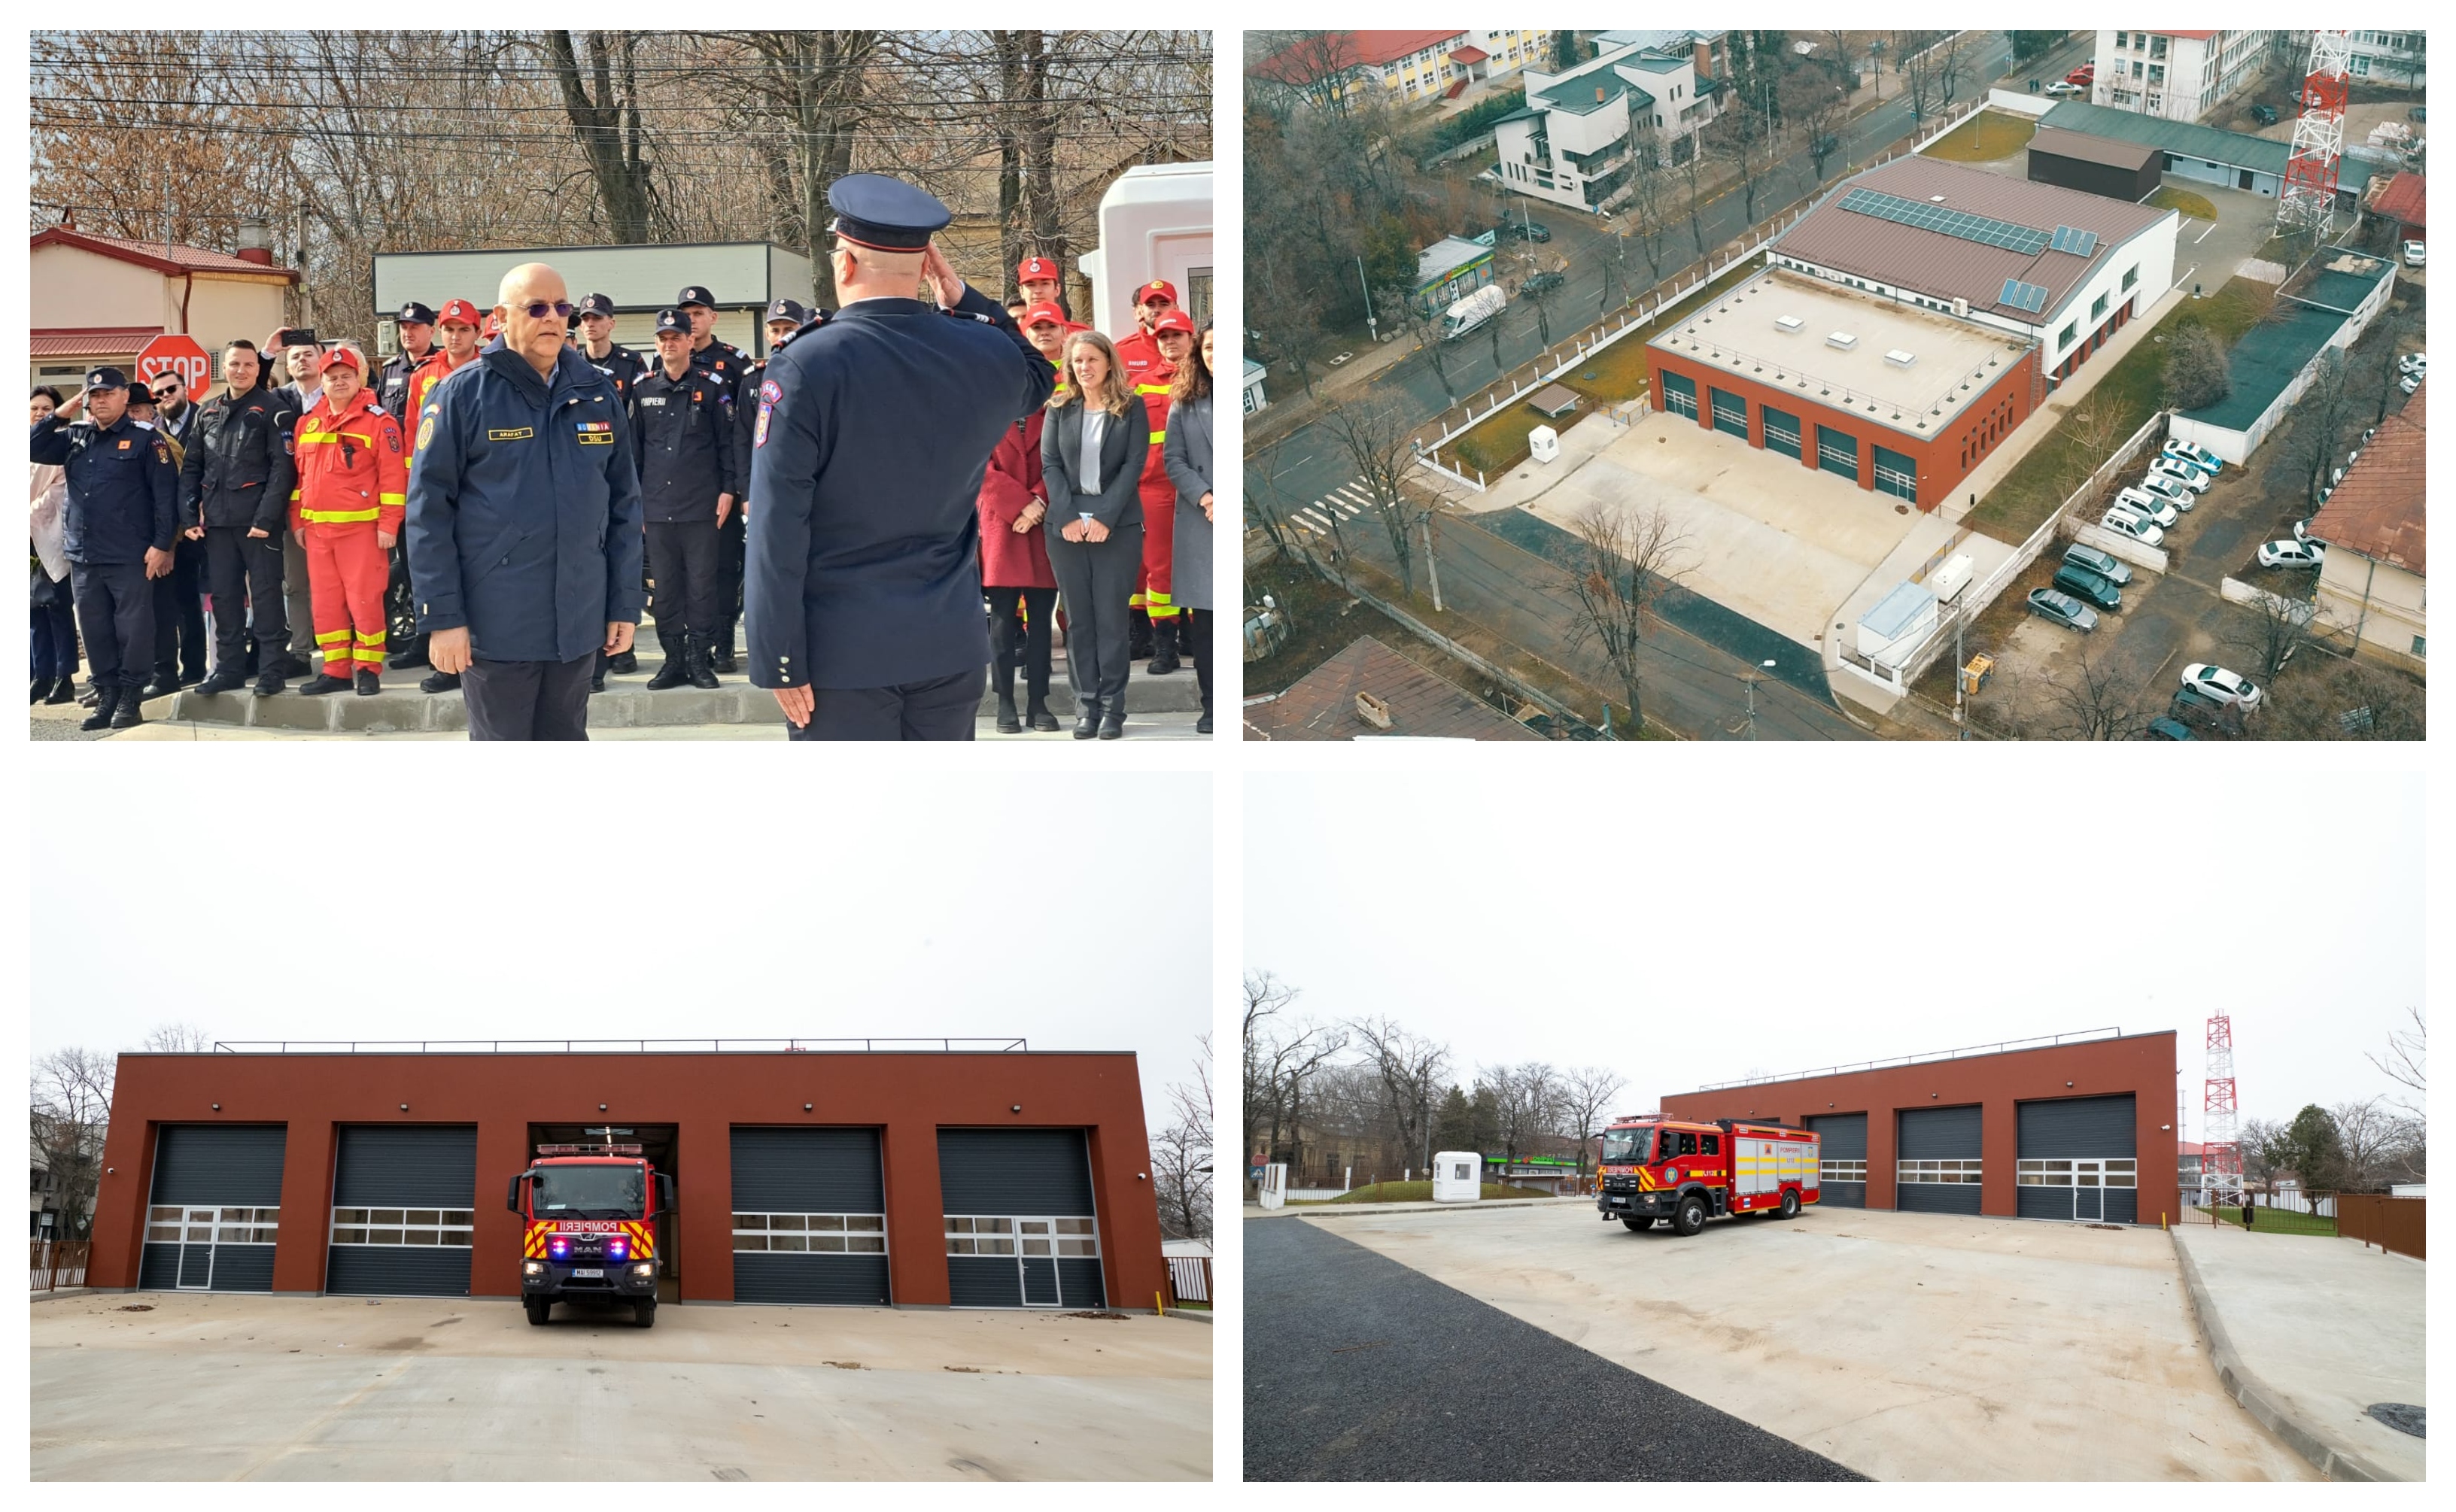 Sediu nou al pompierilor din Tecuci /Adăposturile civile şi alarmarea populaţiei, încă problematice  